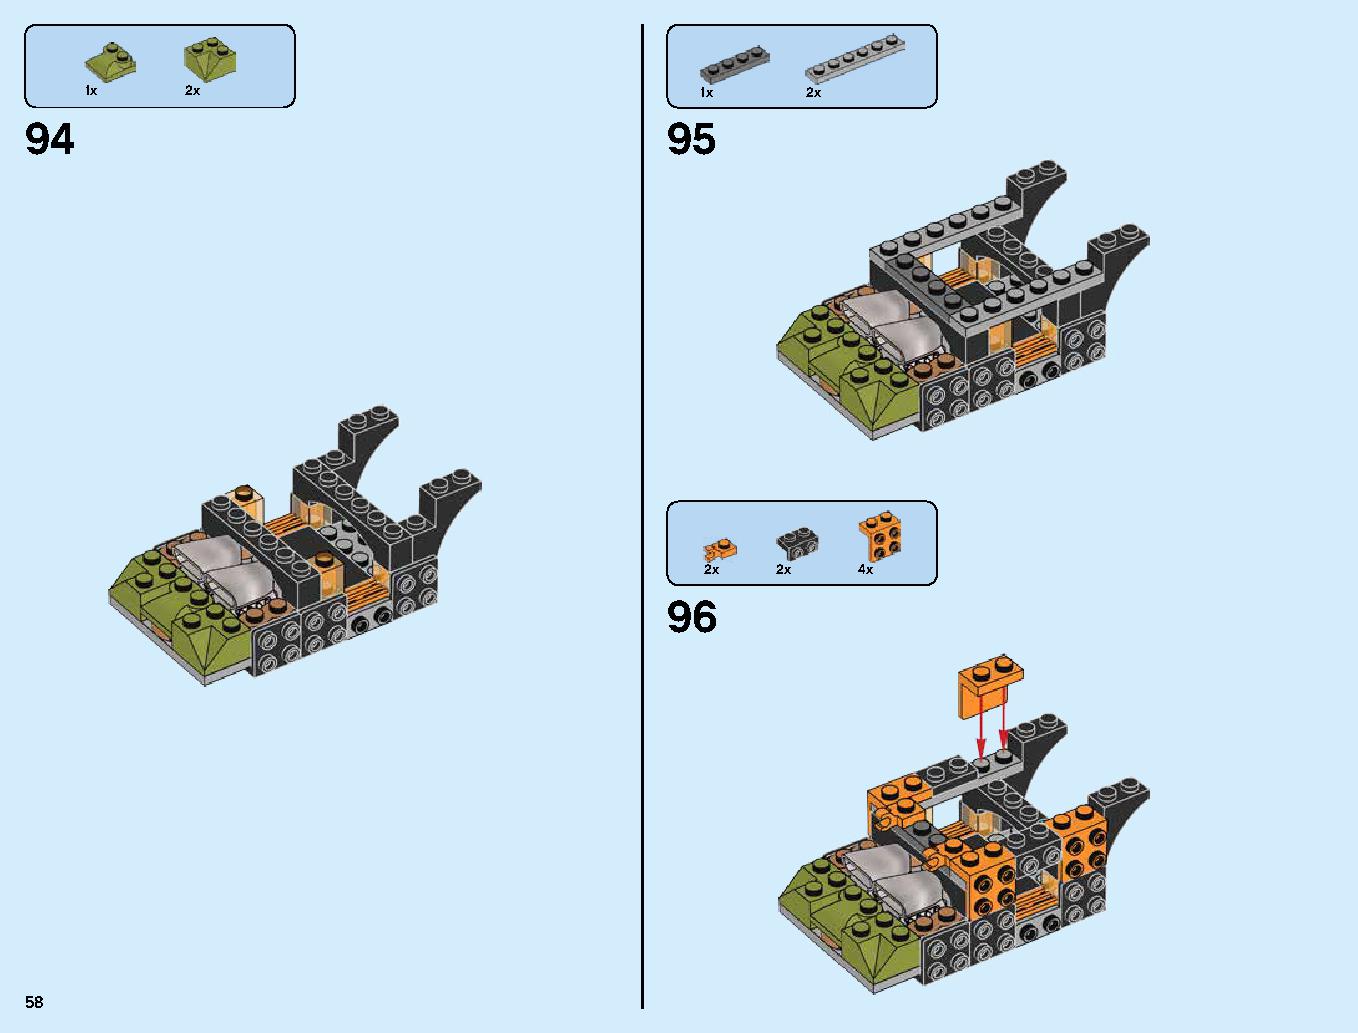 ハンティング・デスストライカー 70654 レゴの商品情報 レゴの説明書・組立方法 58 page